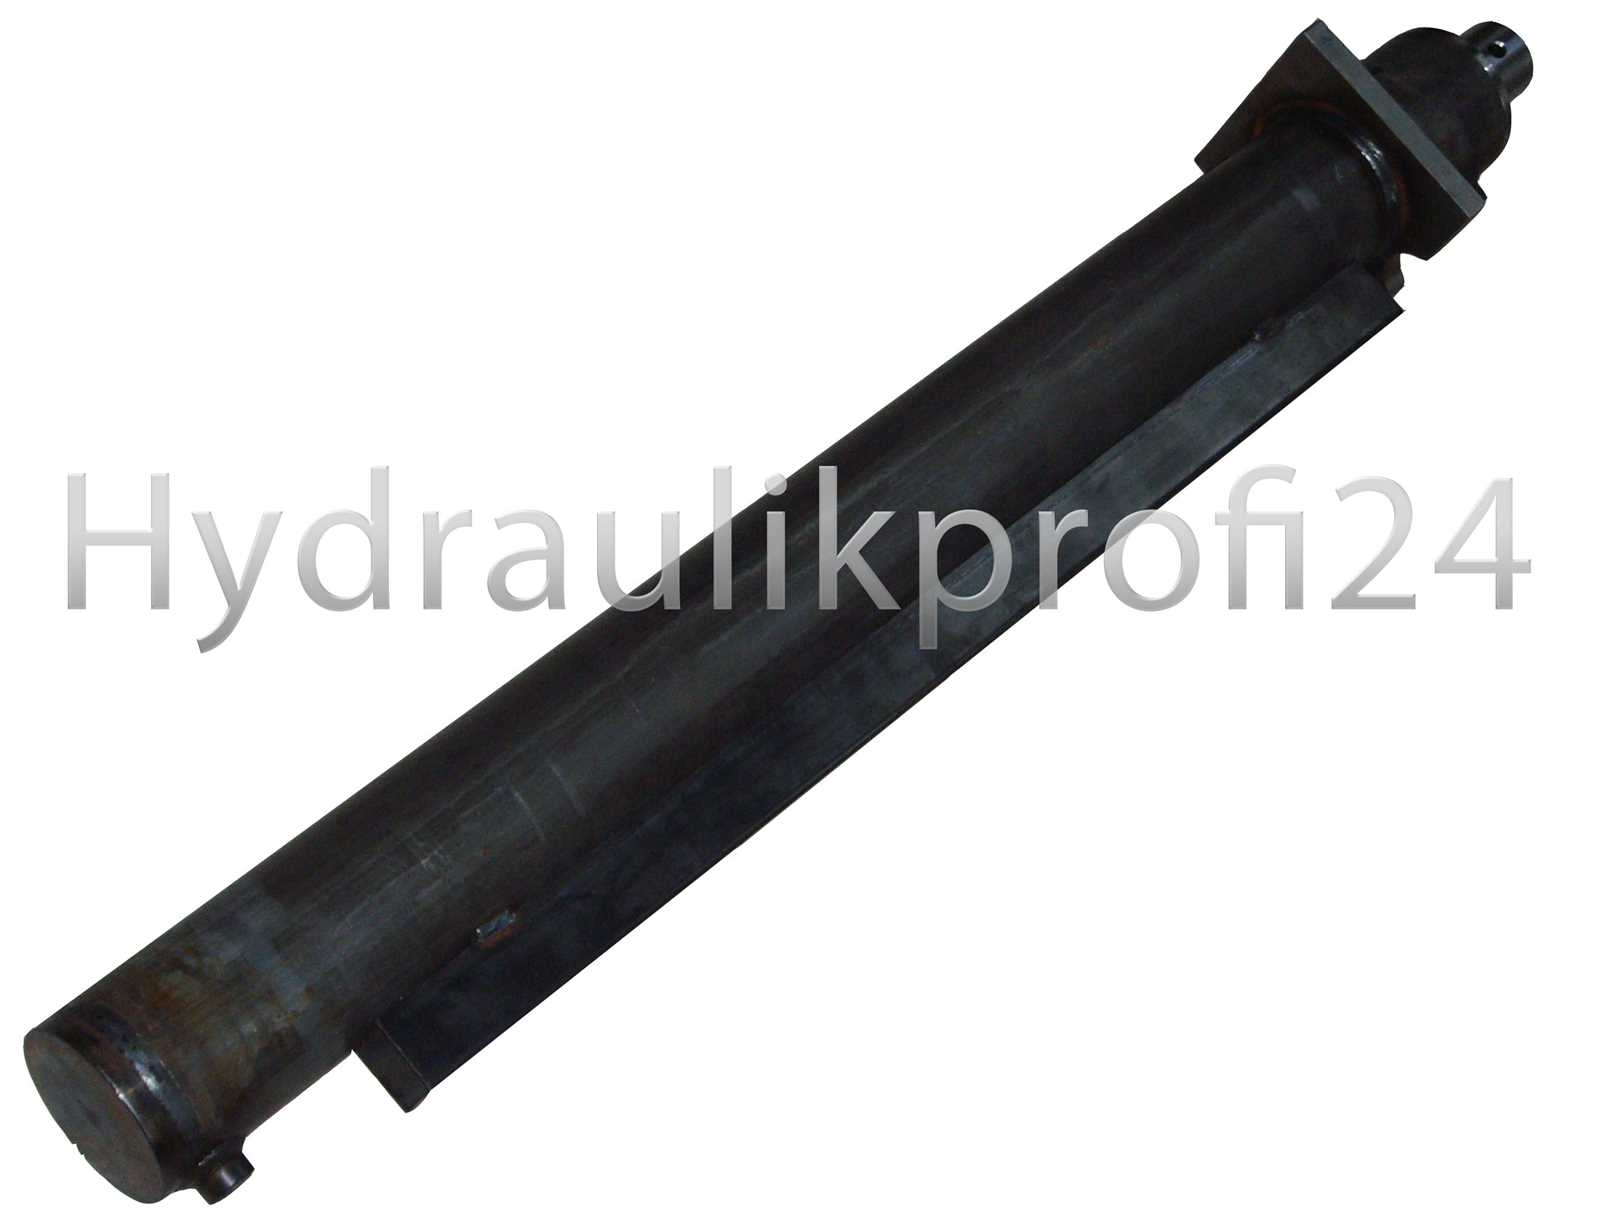 Hydraulikzylinder doppeltwirkend  60-100-1500 für Holzspalter mit Kopfflansch 170x170x20 mm